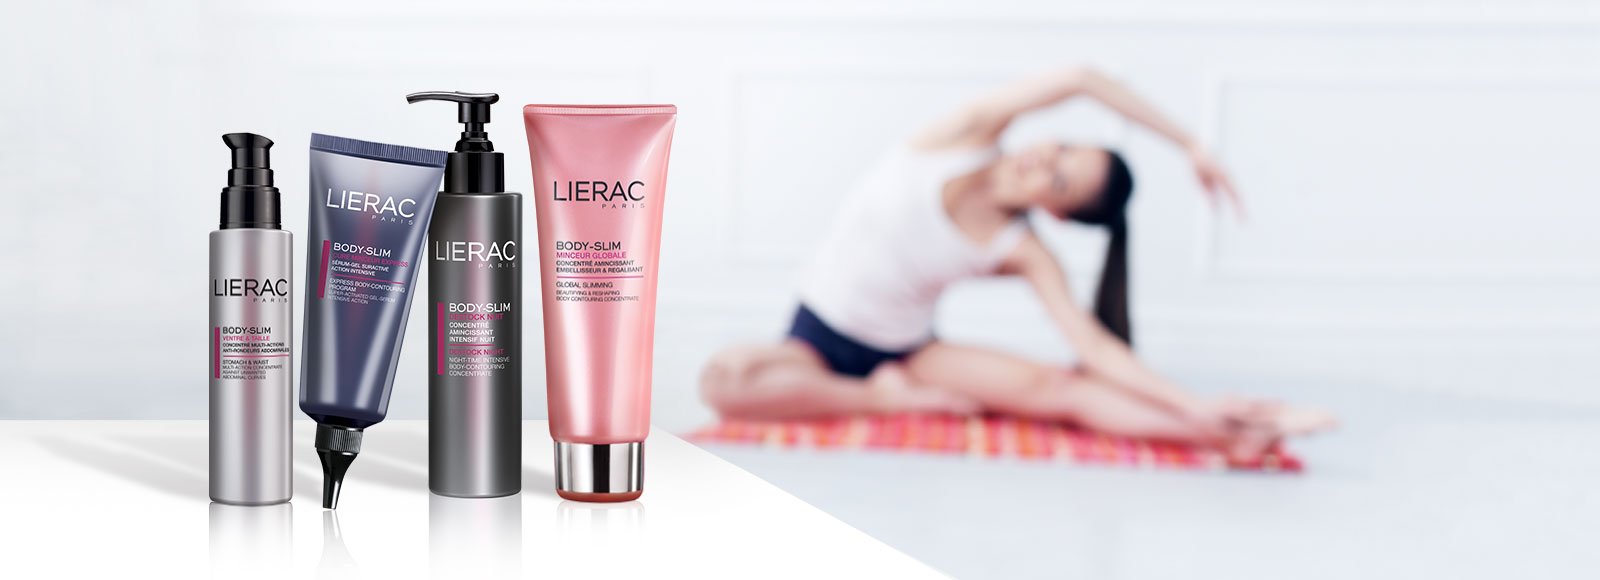 Lierac Body-Slim Product range on Farma2go